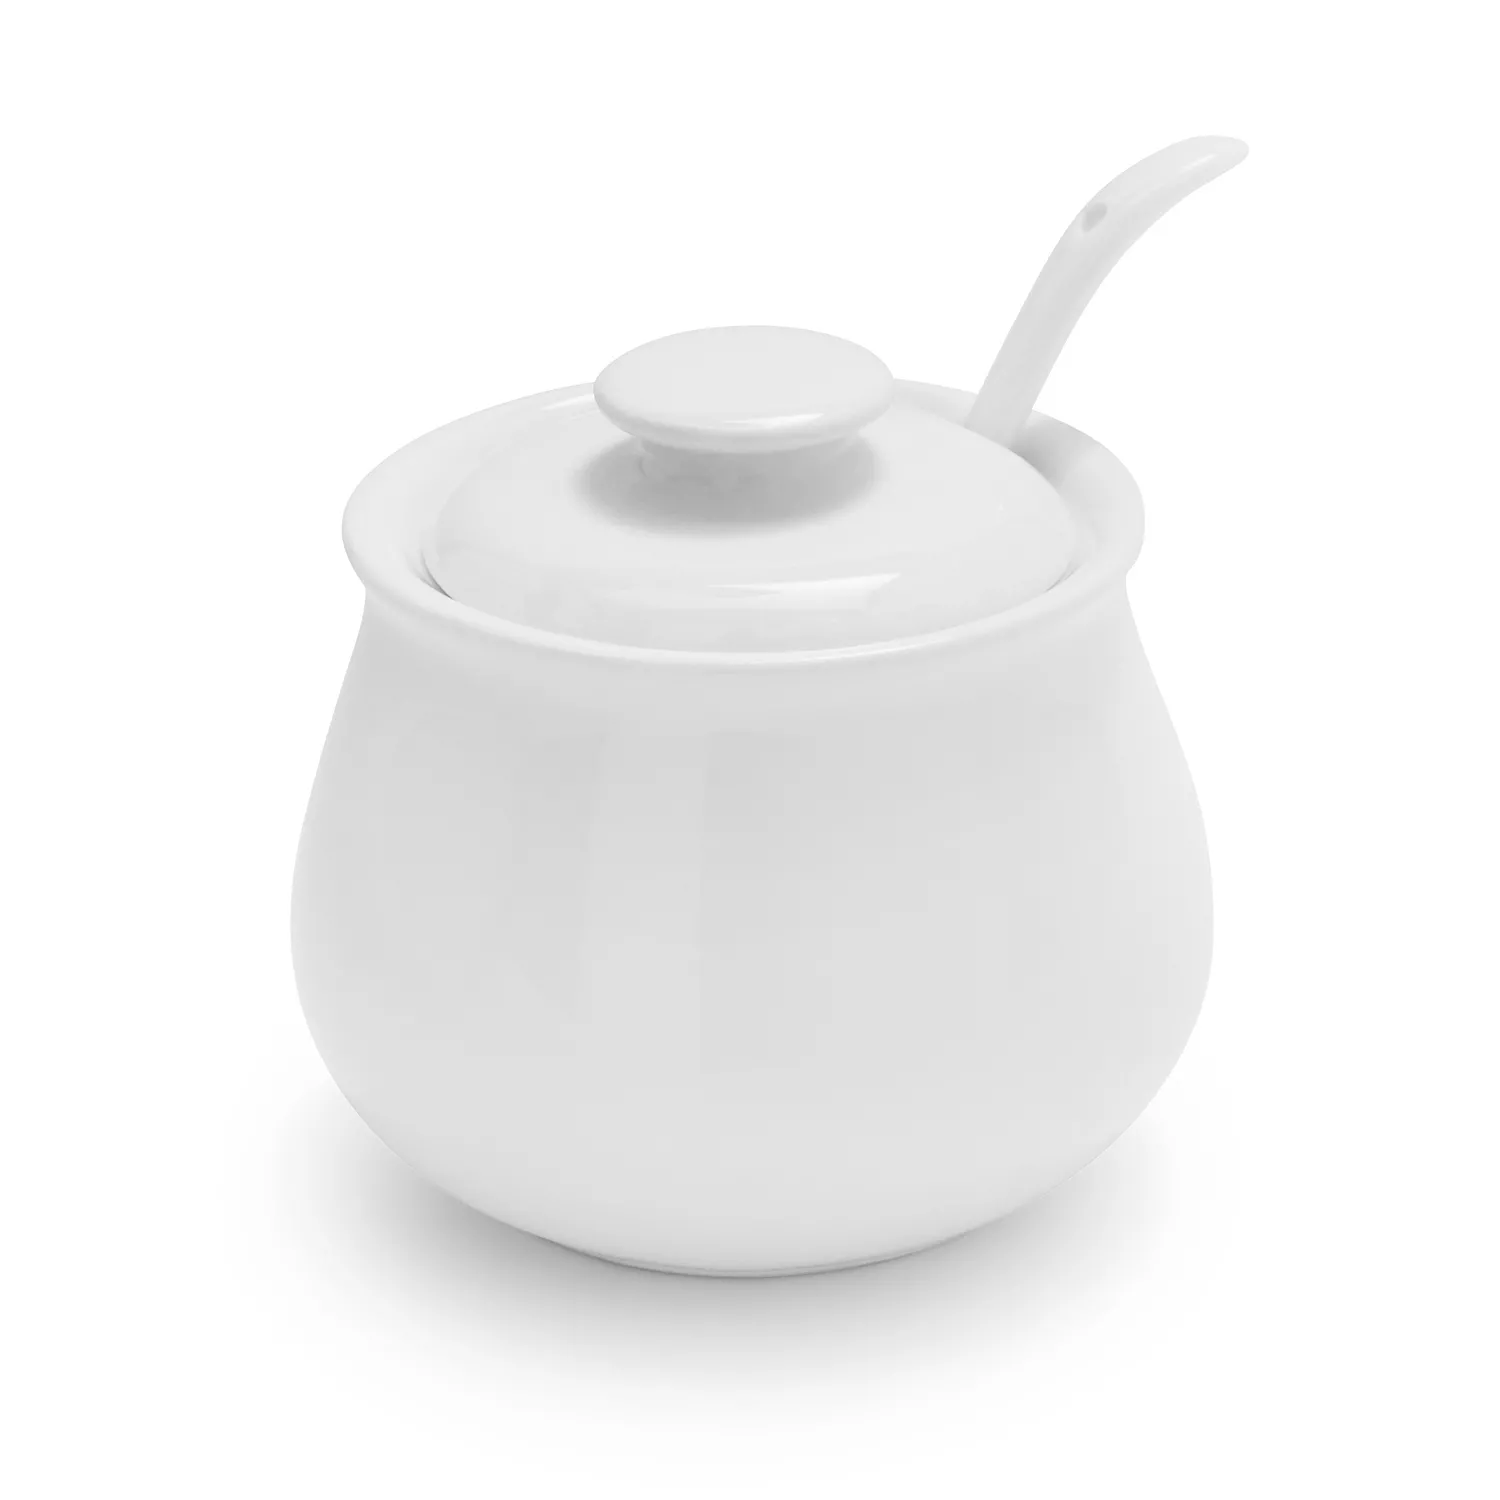 Sur La Table Porcelain Sugar Bowl with Lid and Serving Spoon